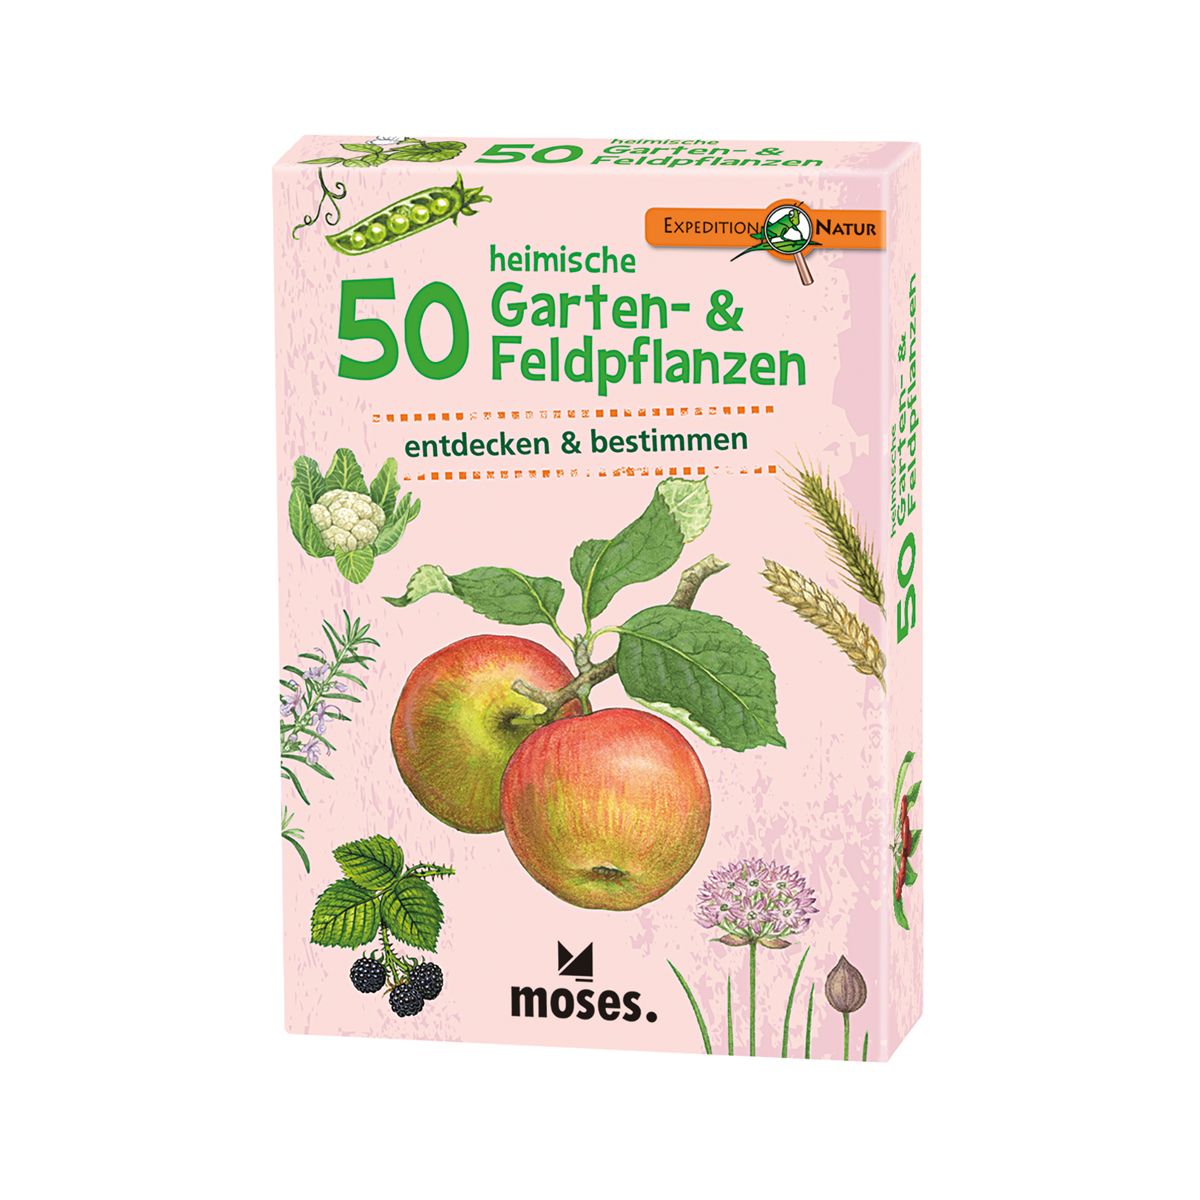 50 heimische Garten- & Feldpf